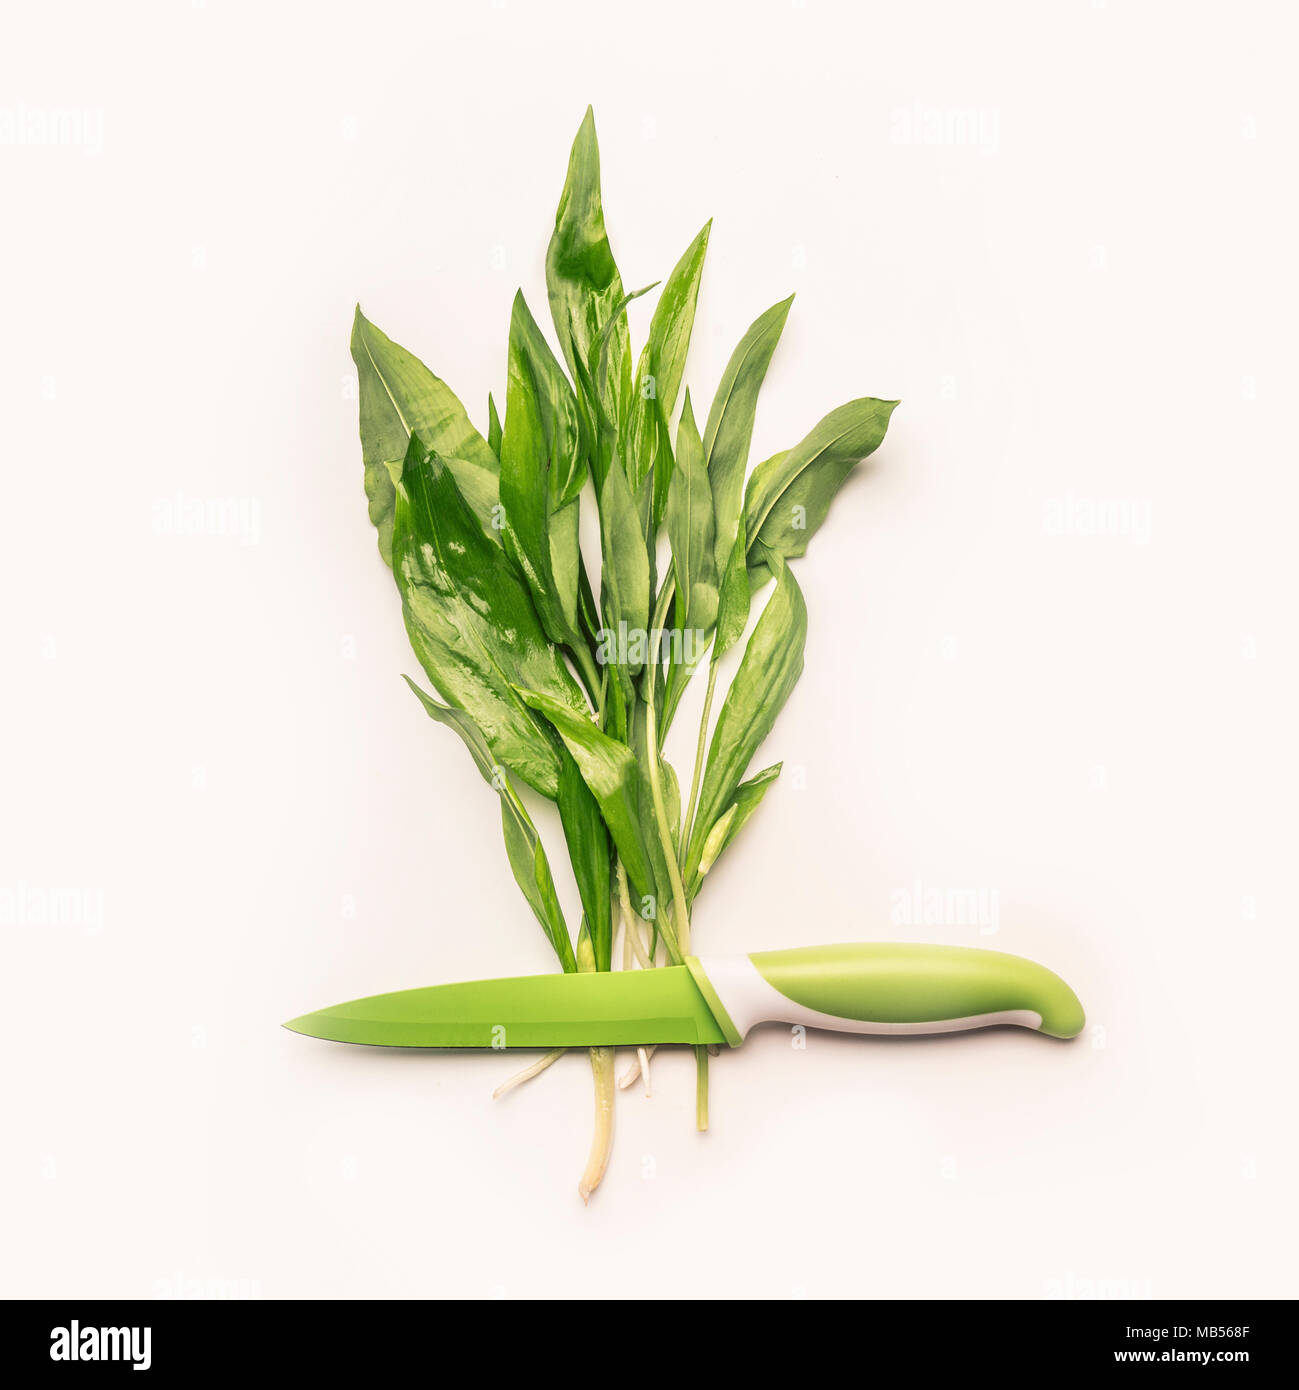 Diseño creativo con ajo silvestre de hojas verdes frescas y cuchillo sobre fondo blanco. Estacional de alimentos saludables, recetas y comer concepto Foto de stock